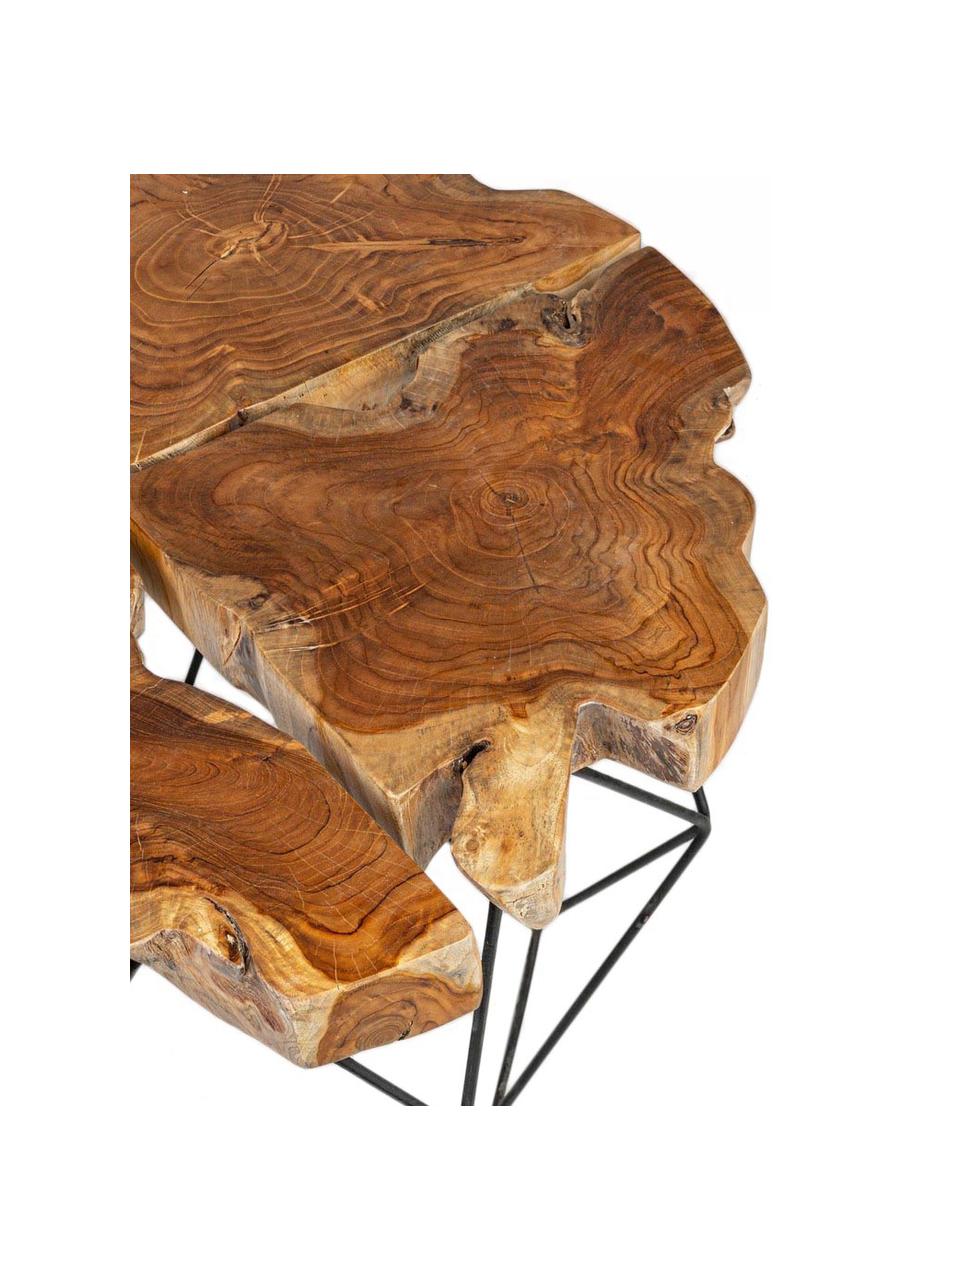 Konferenční stolek z teakového dřeva Adanya, Hnědá, černá, Ø 80 cm, V 40 cm